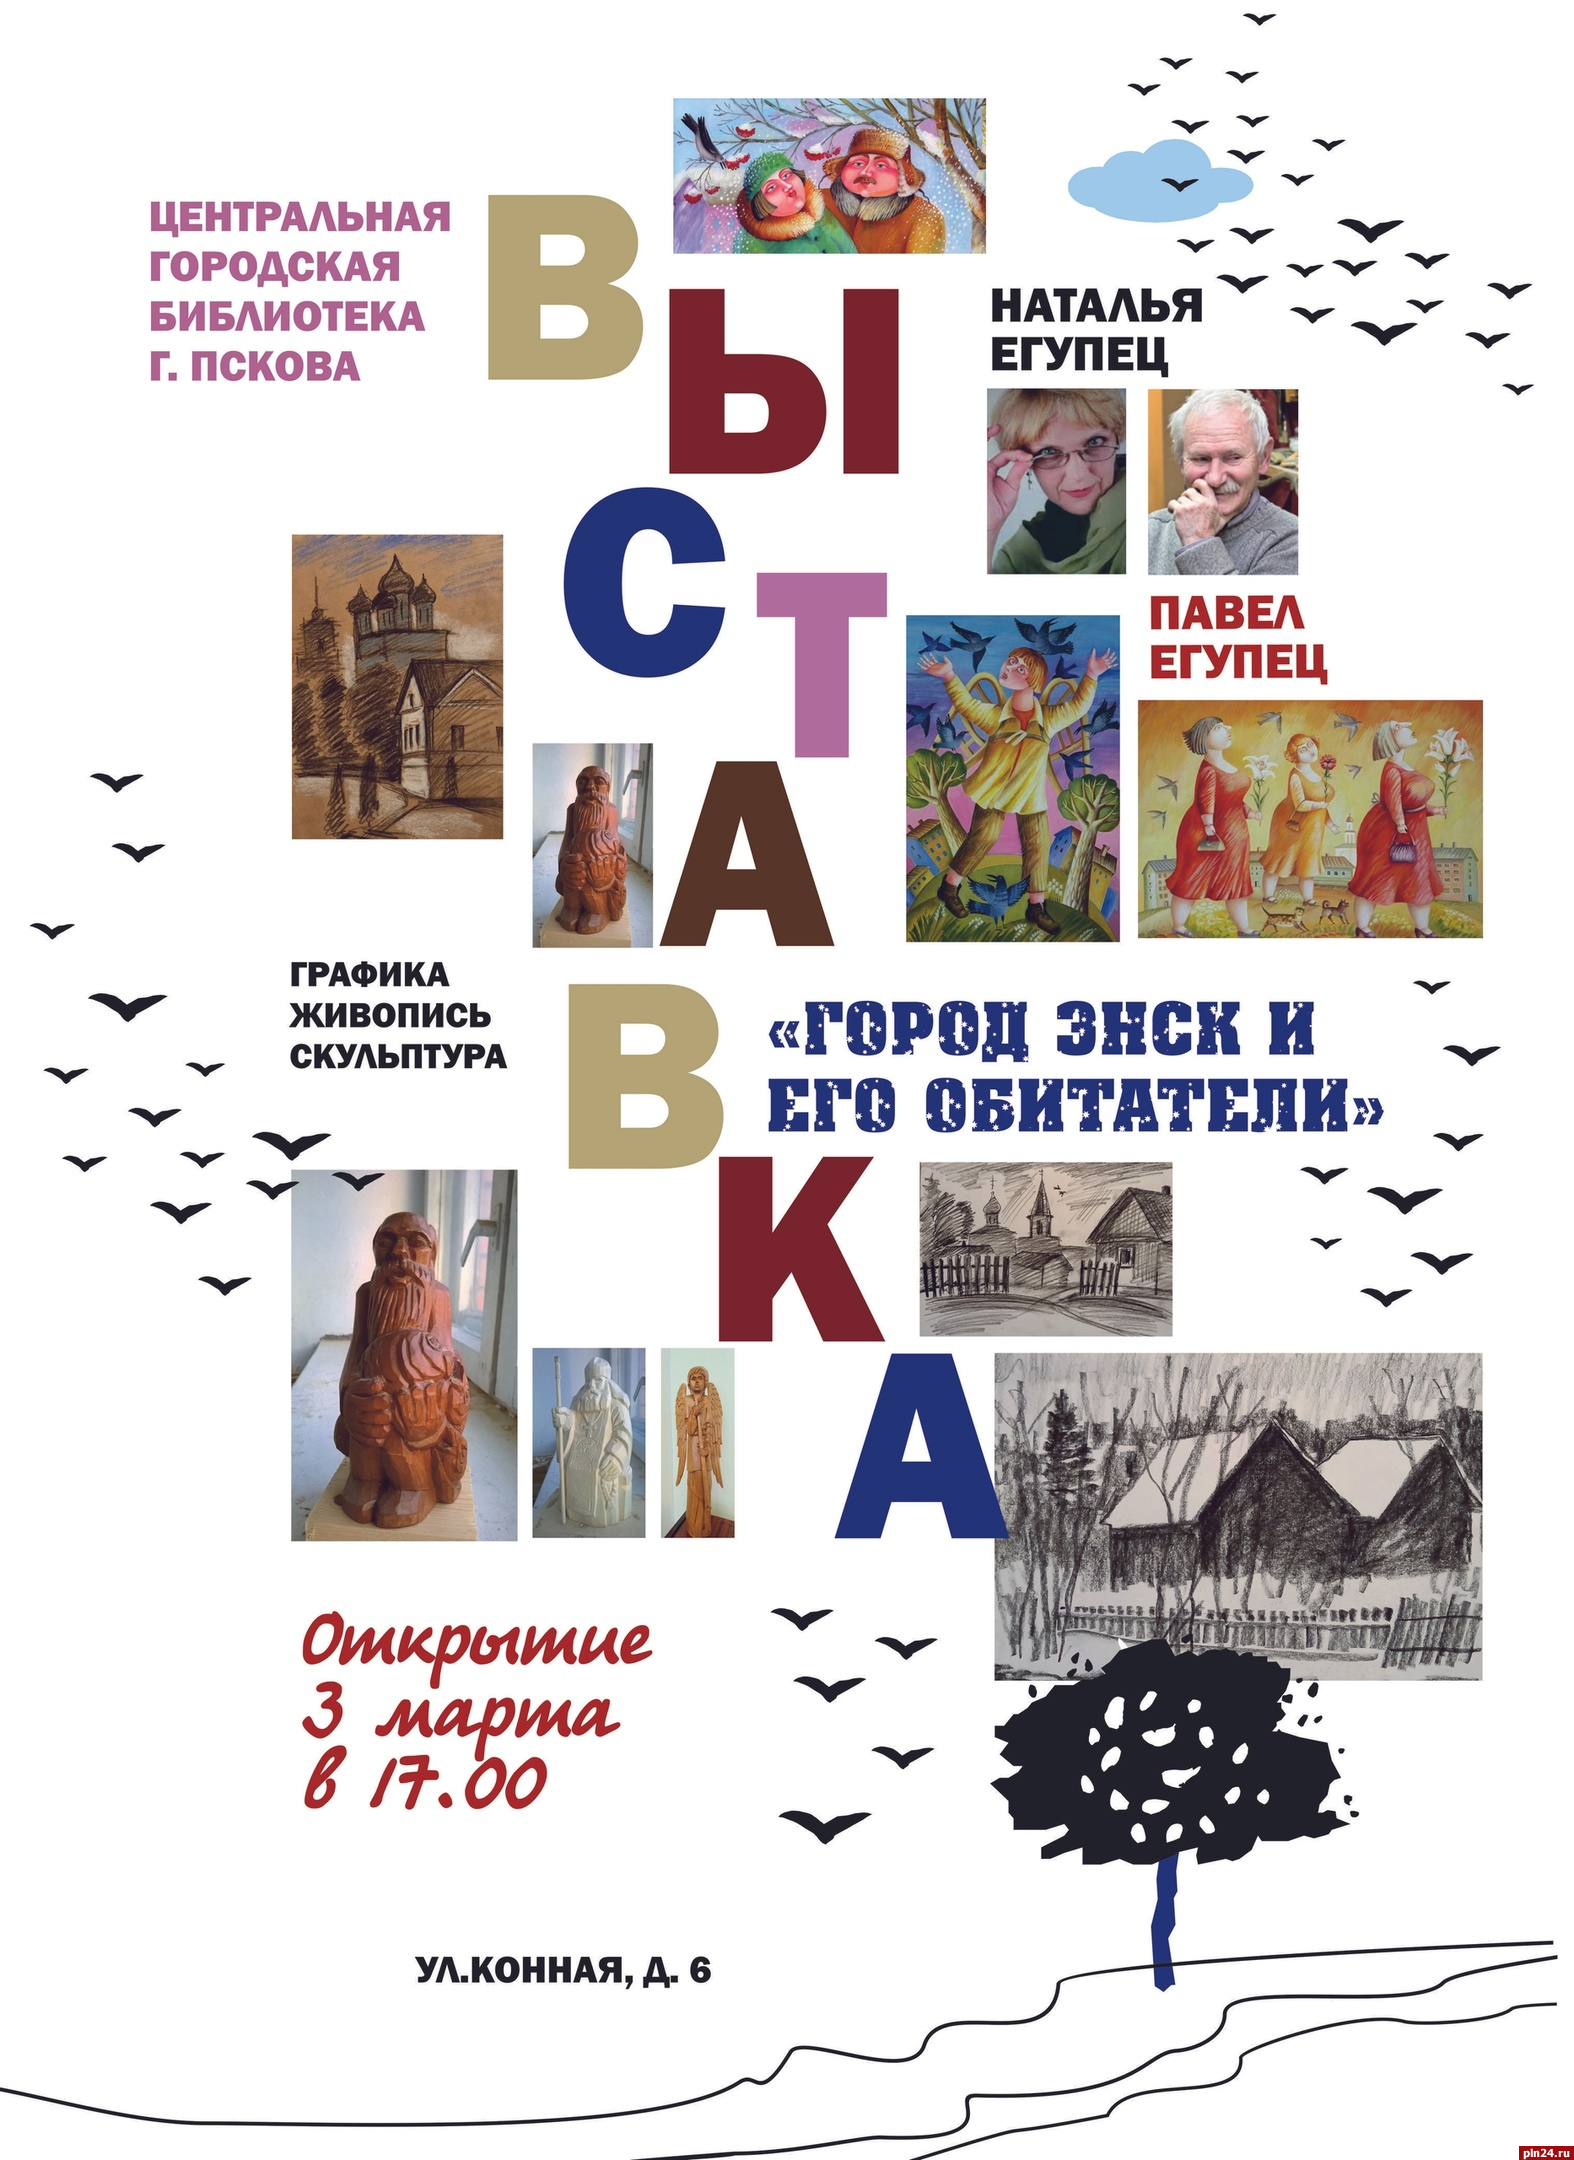 Выставка «Город Энск и его обитатели» откроется в Пскове 3 марта